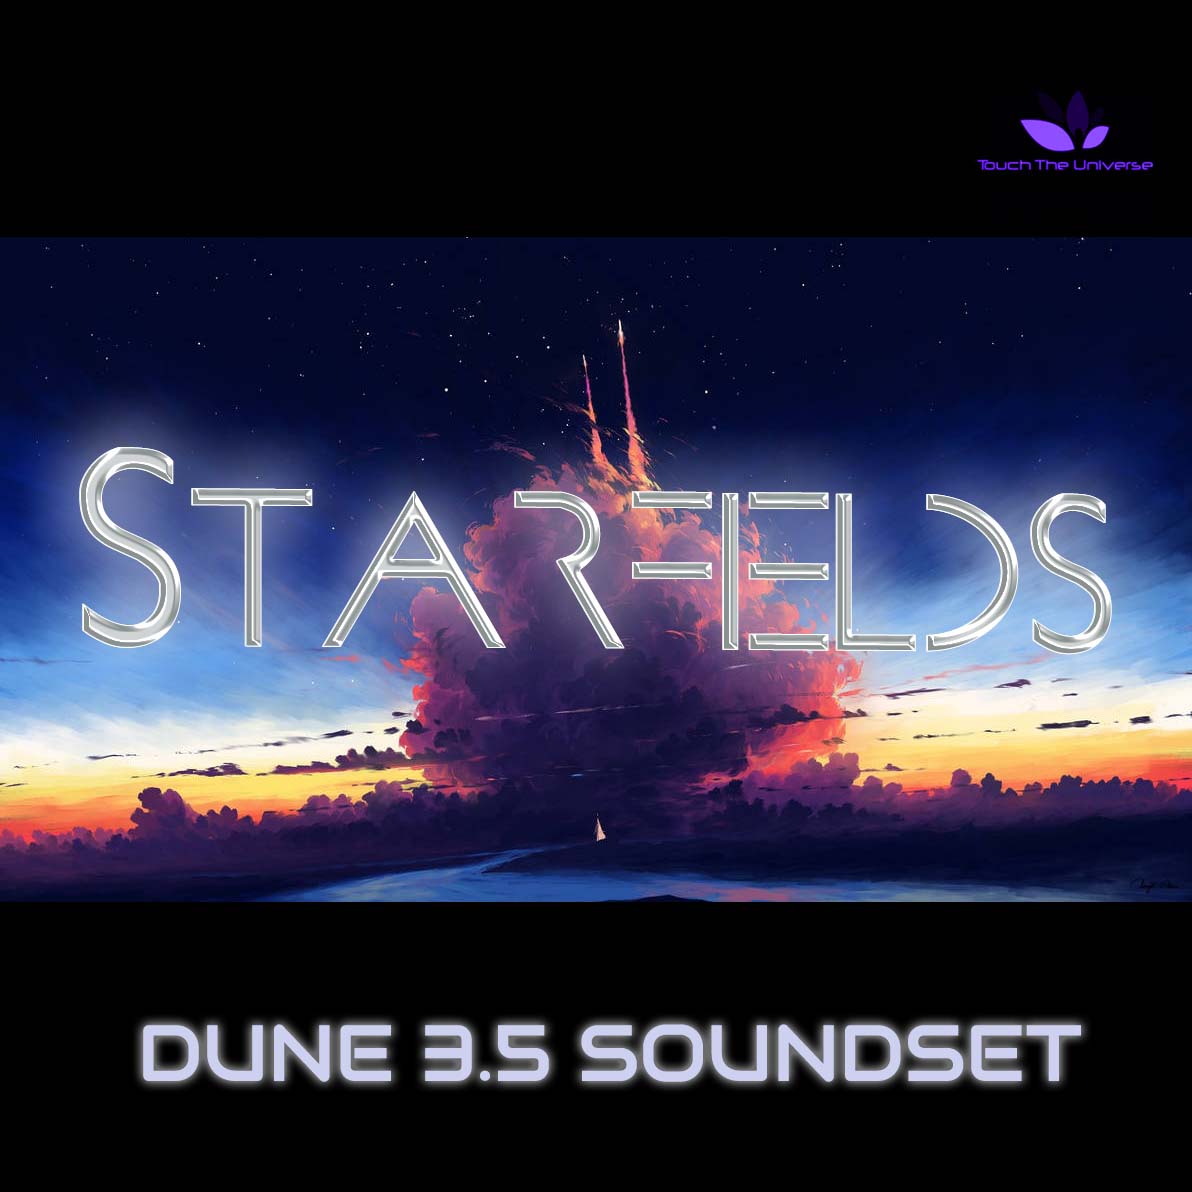 Starfields for Dune 3.5